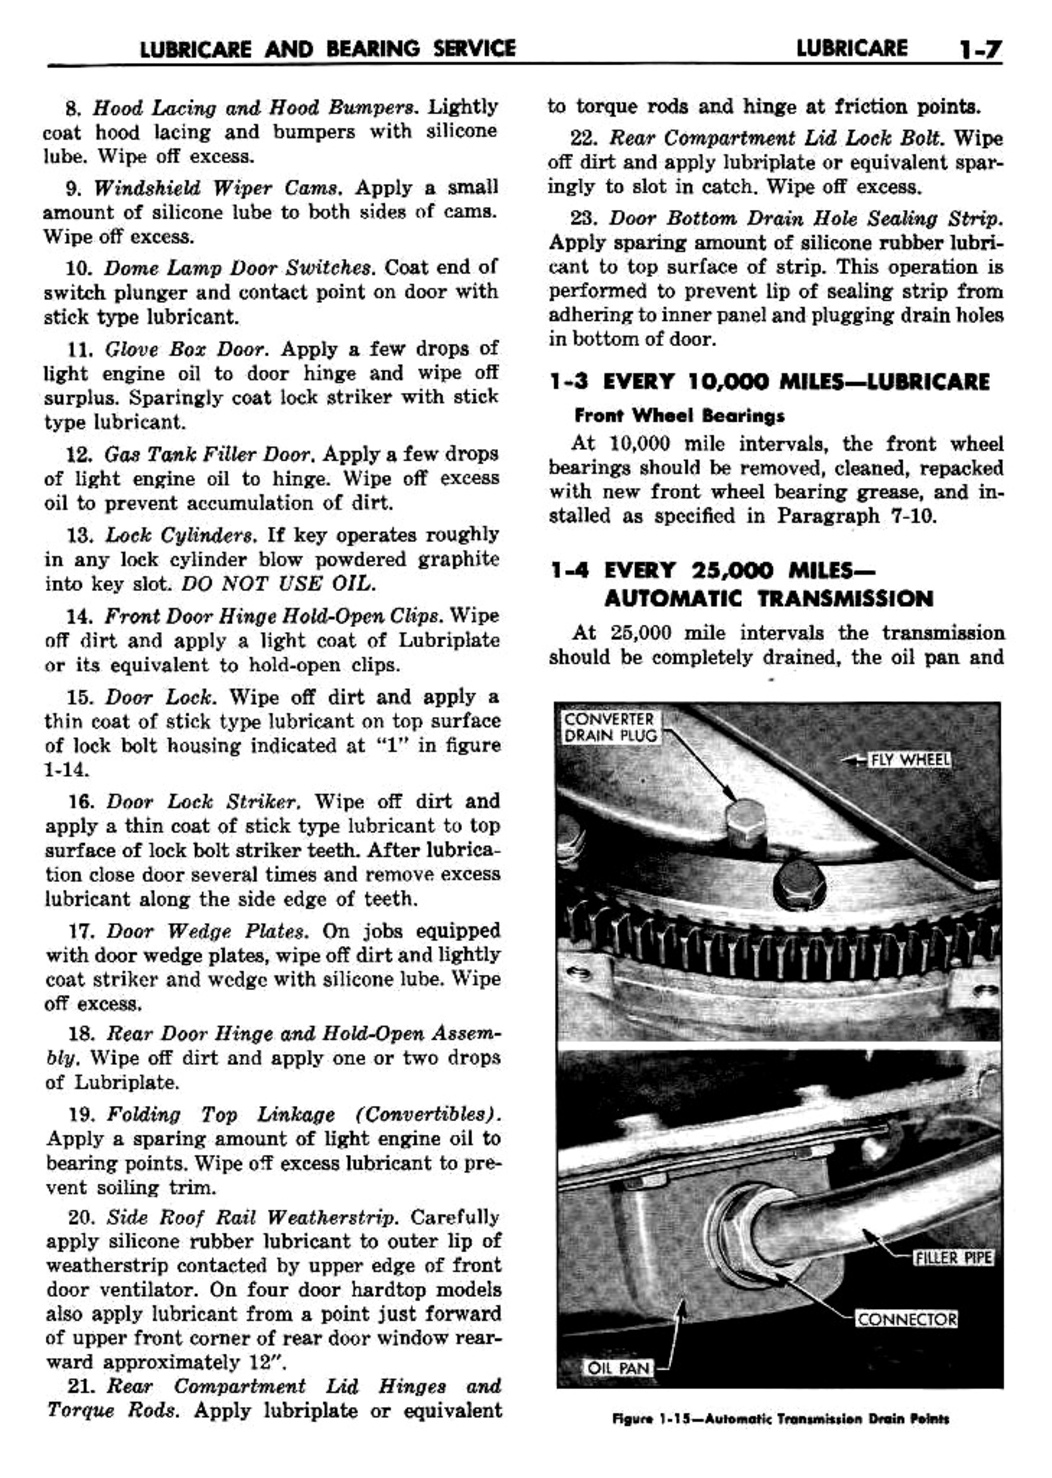 n_02 1960 Buick Shop Manual - Lubricare-007-007.jpg